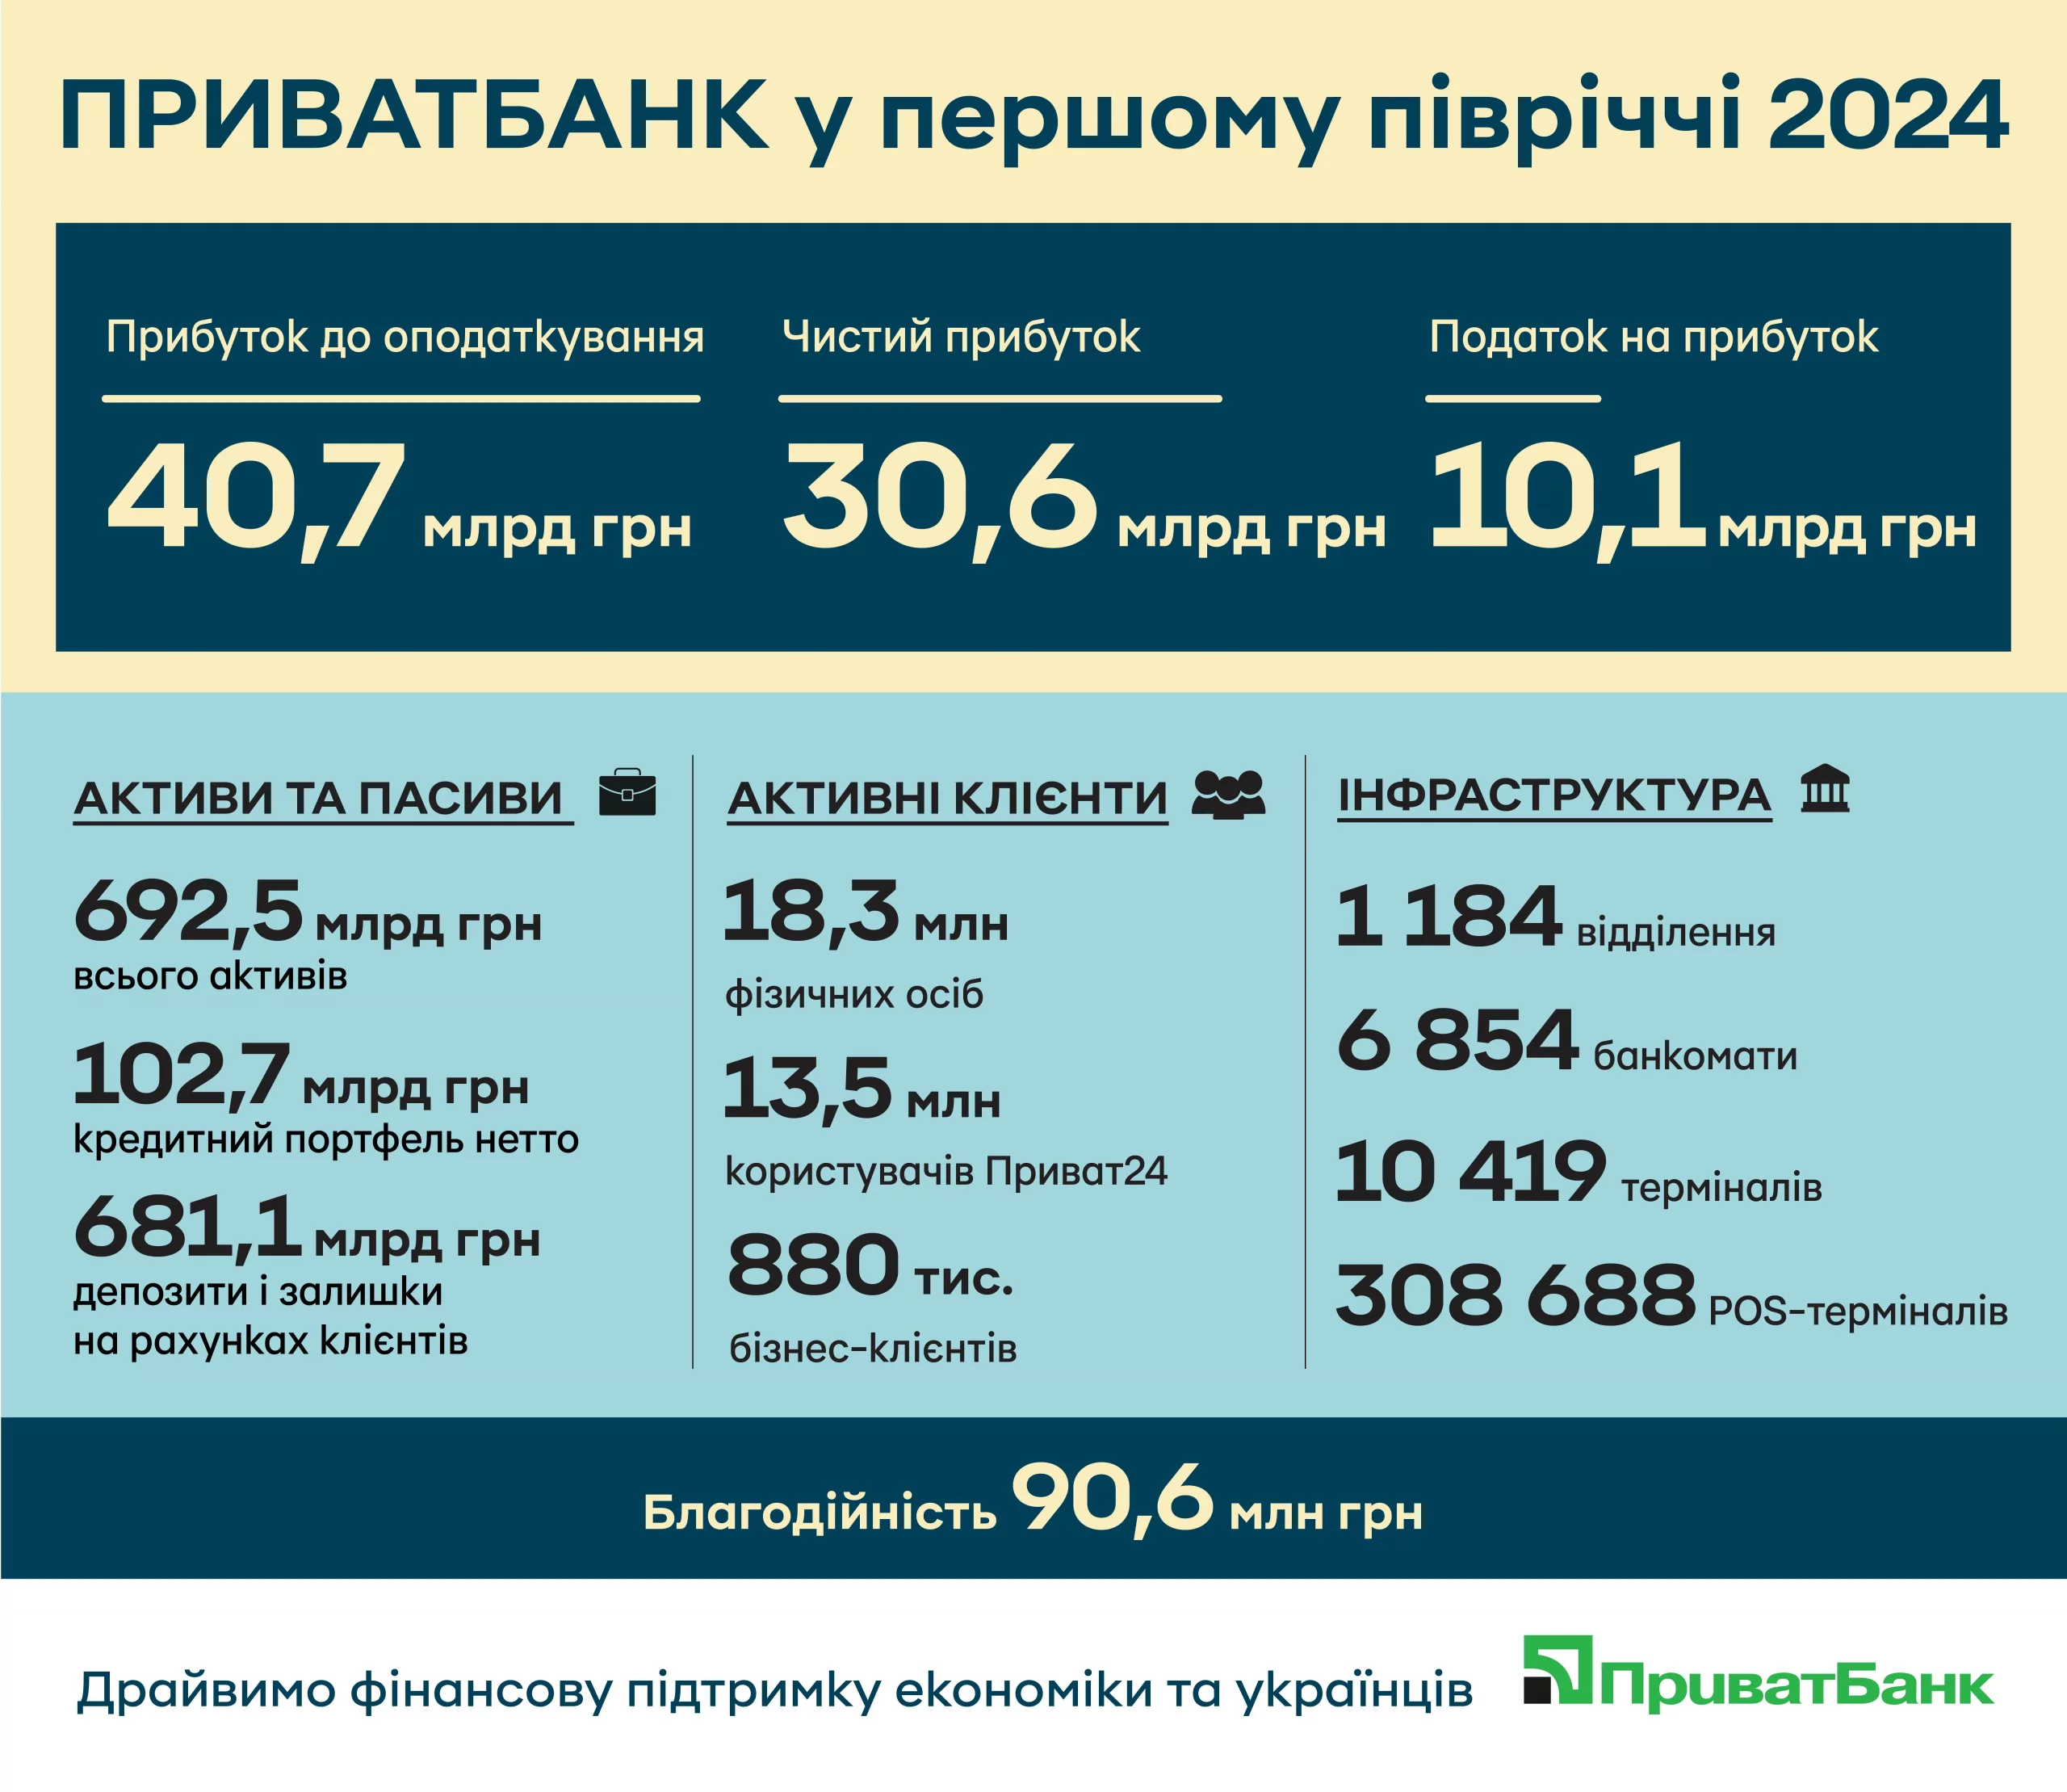 Результаты работы ПриватБанка в первом полугодии 2024-го